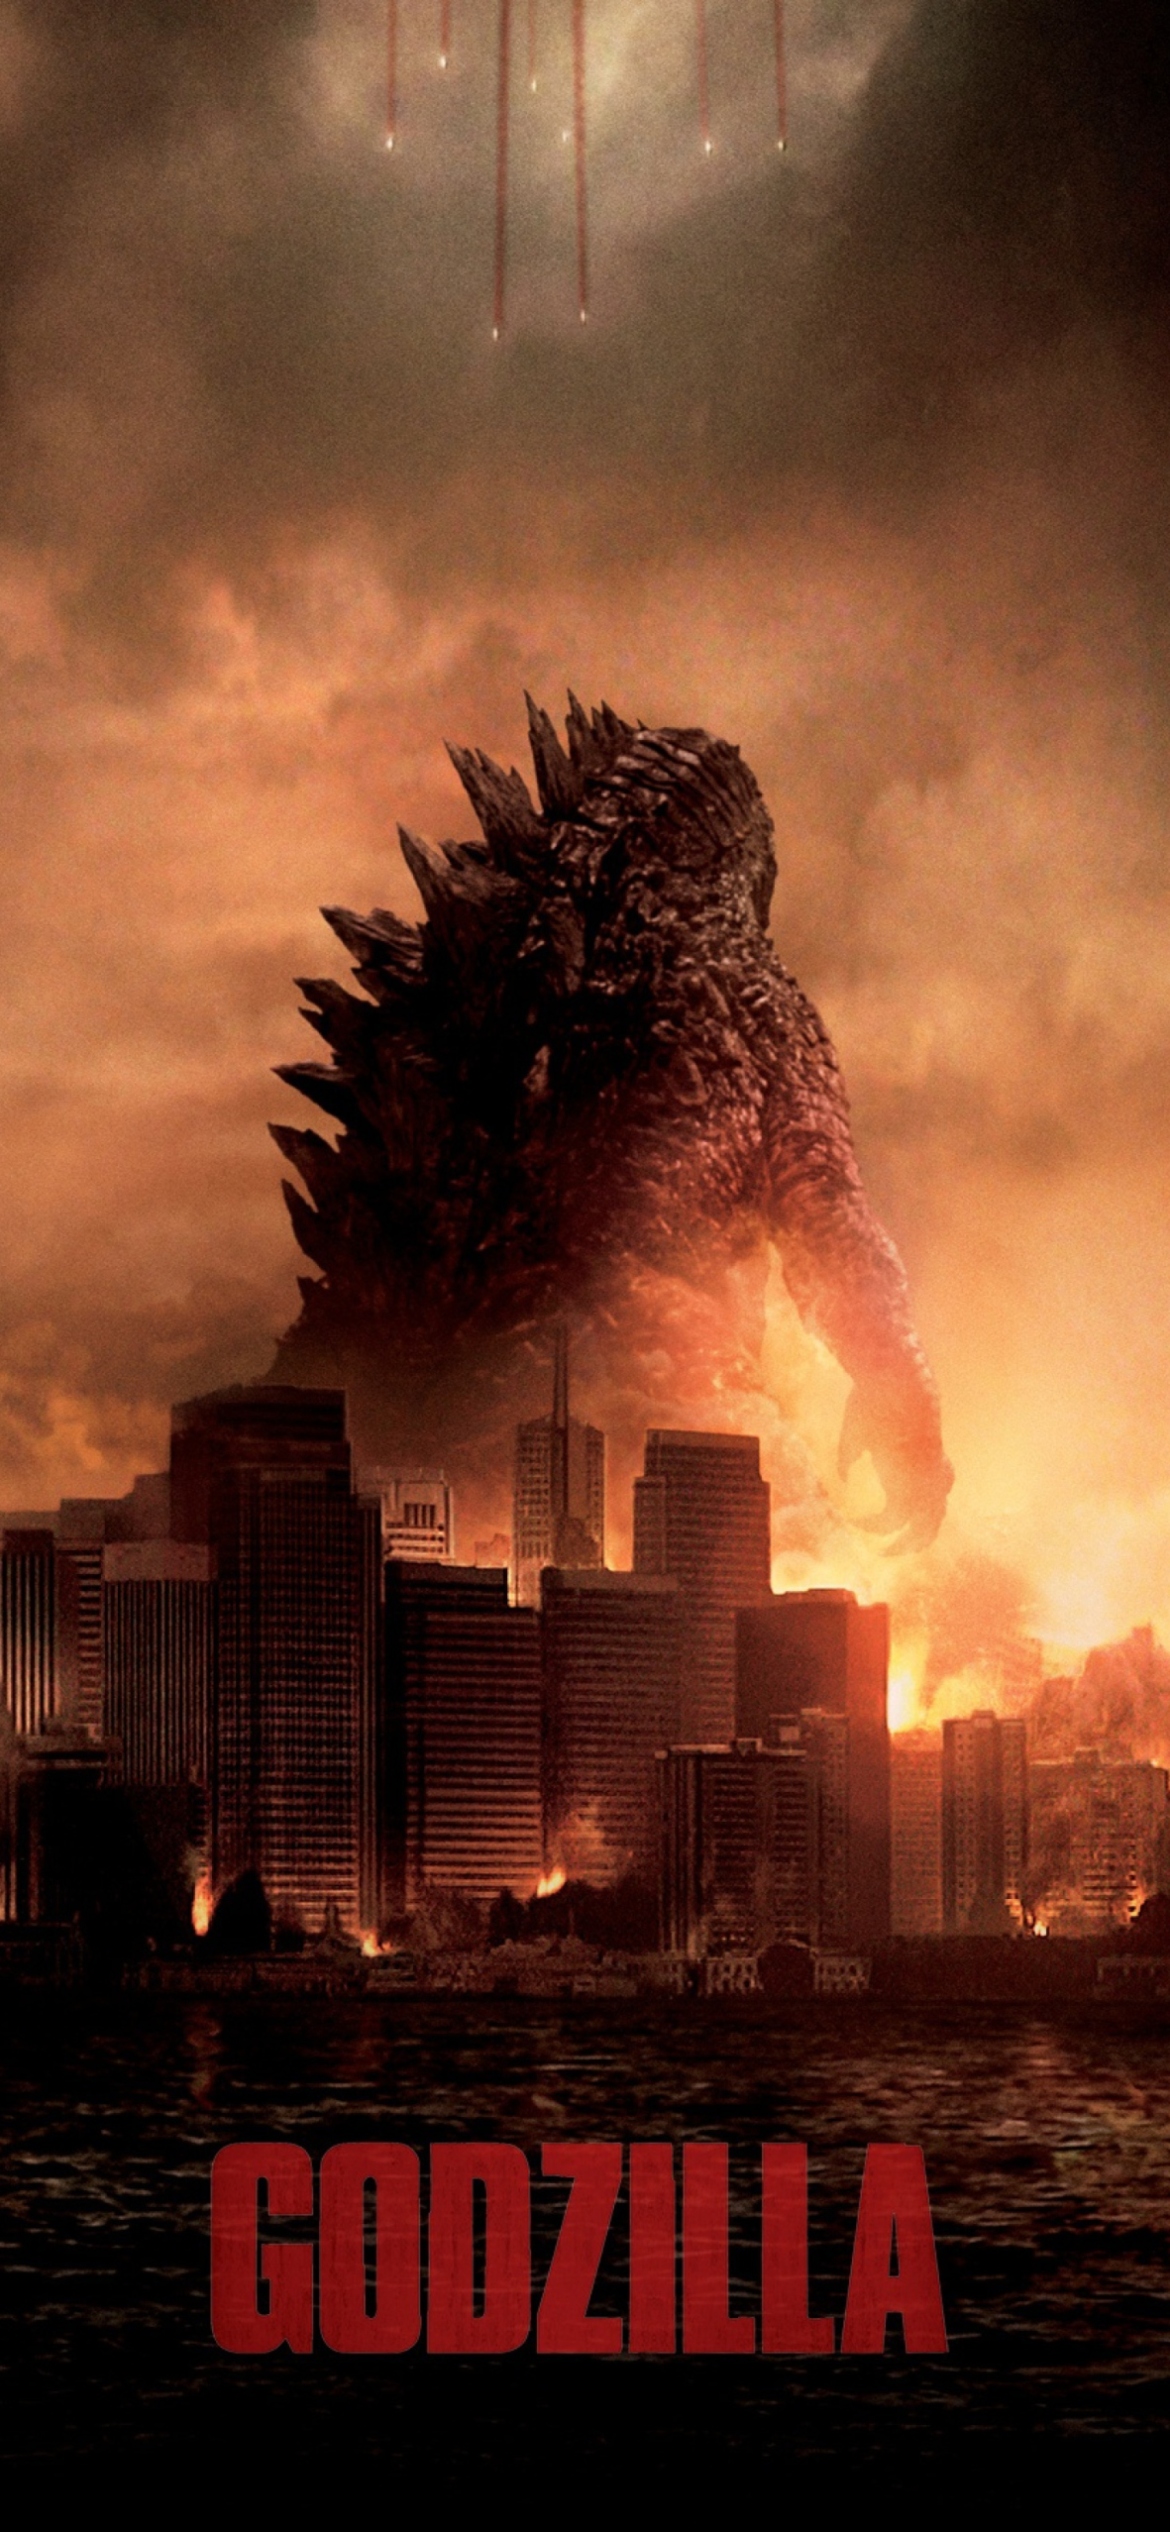 Sfondi 2014 Godzilla 1170x2532